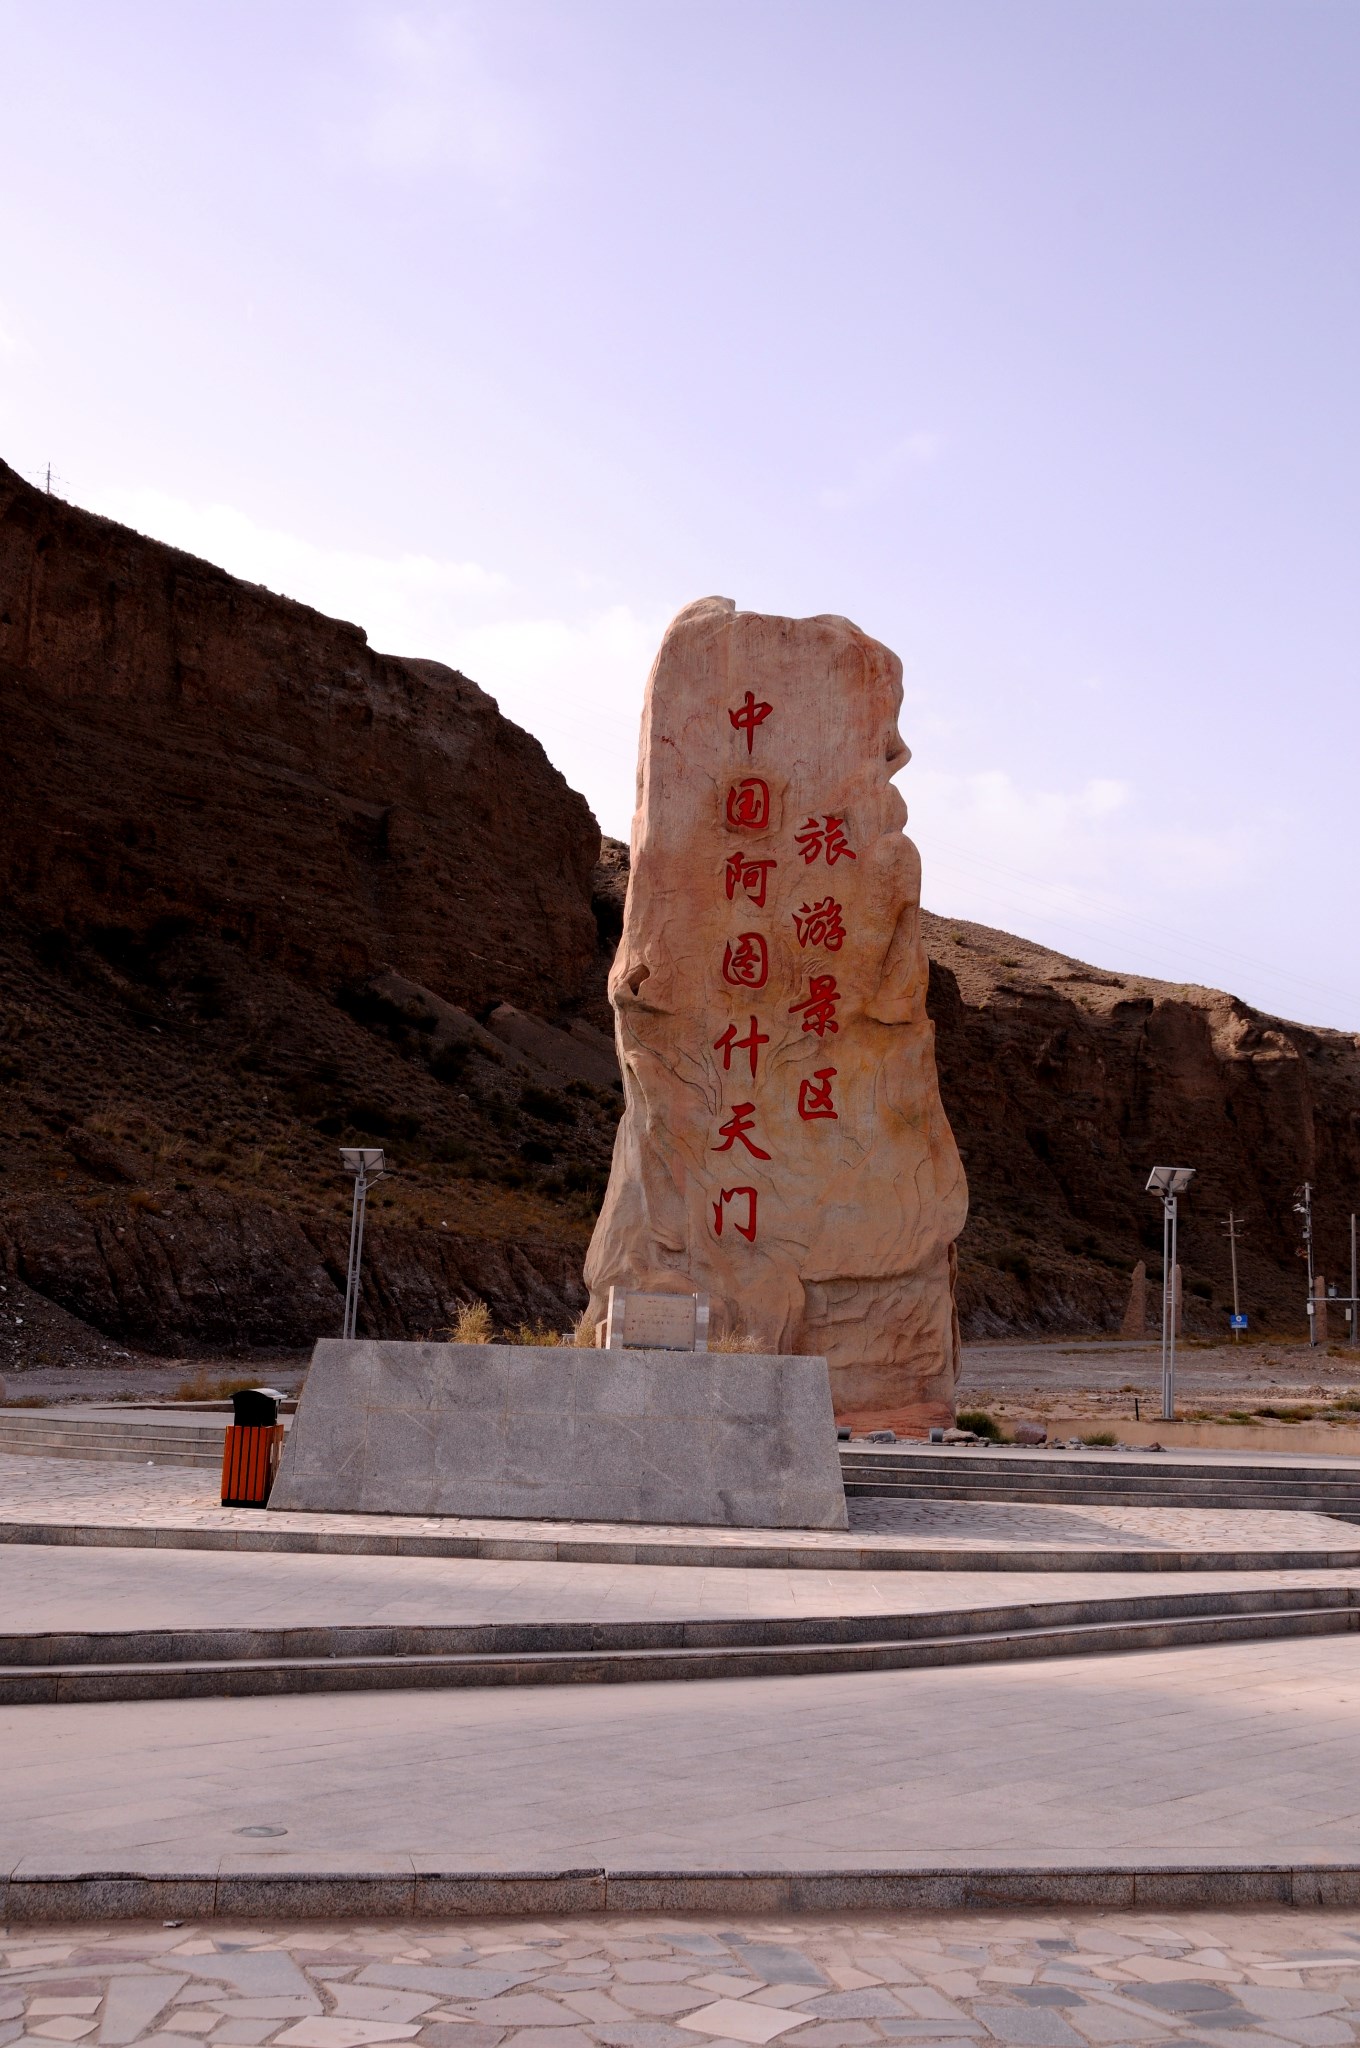 新疆自治区旅游 新疆旅游攻略 新疆游第十二站---阿图什天门